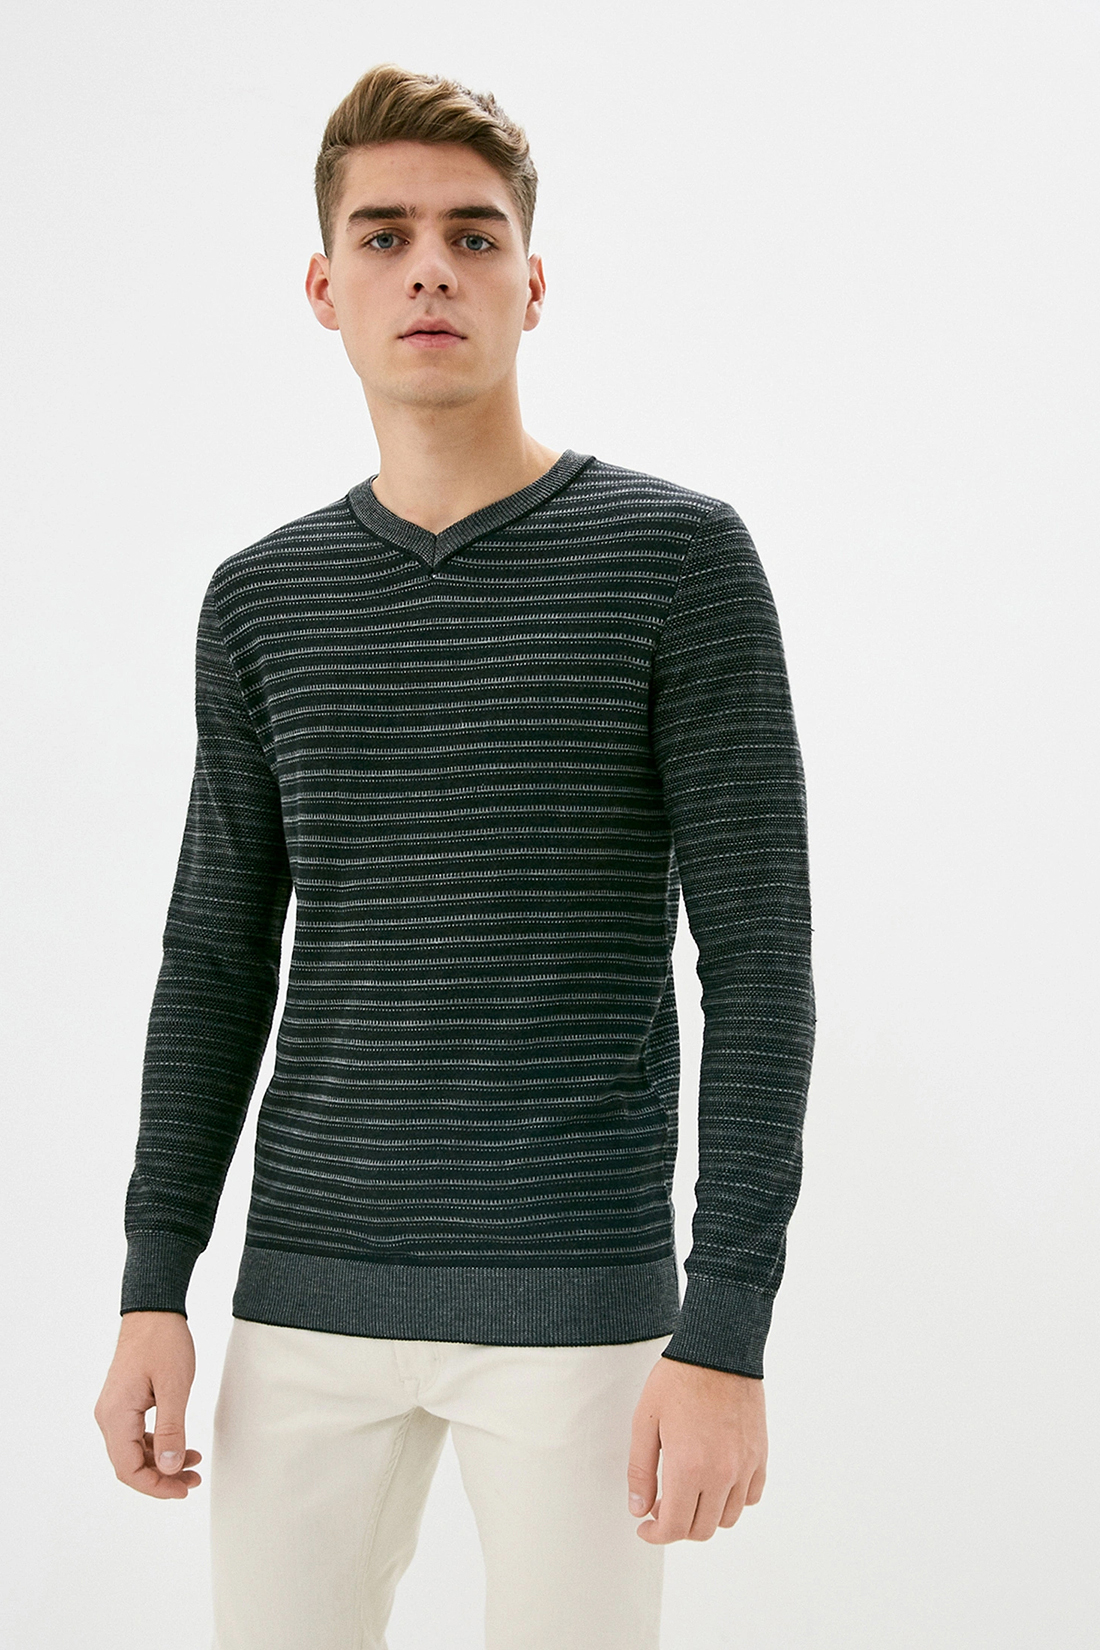 Пуловер с рельефными полосками (арт. baon B639502), размер XL, цвет белый Пуловер с рельефными полосками (арт. baon B639502) - фото 1